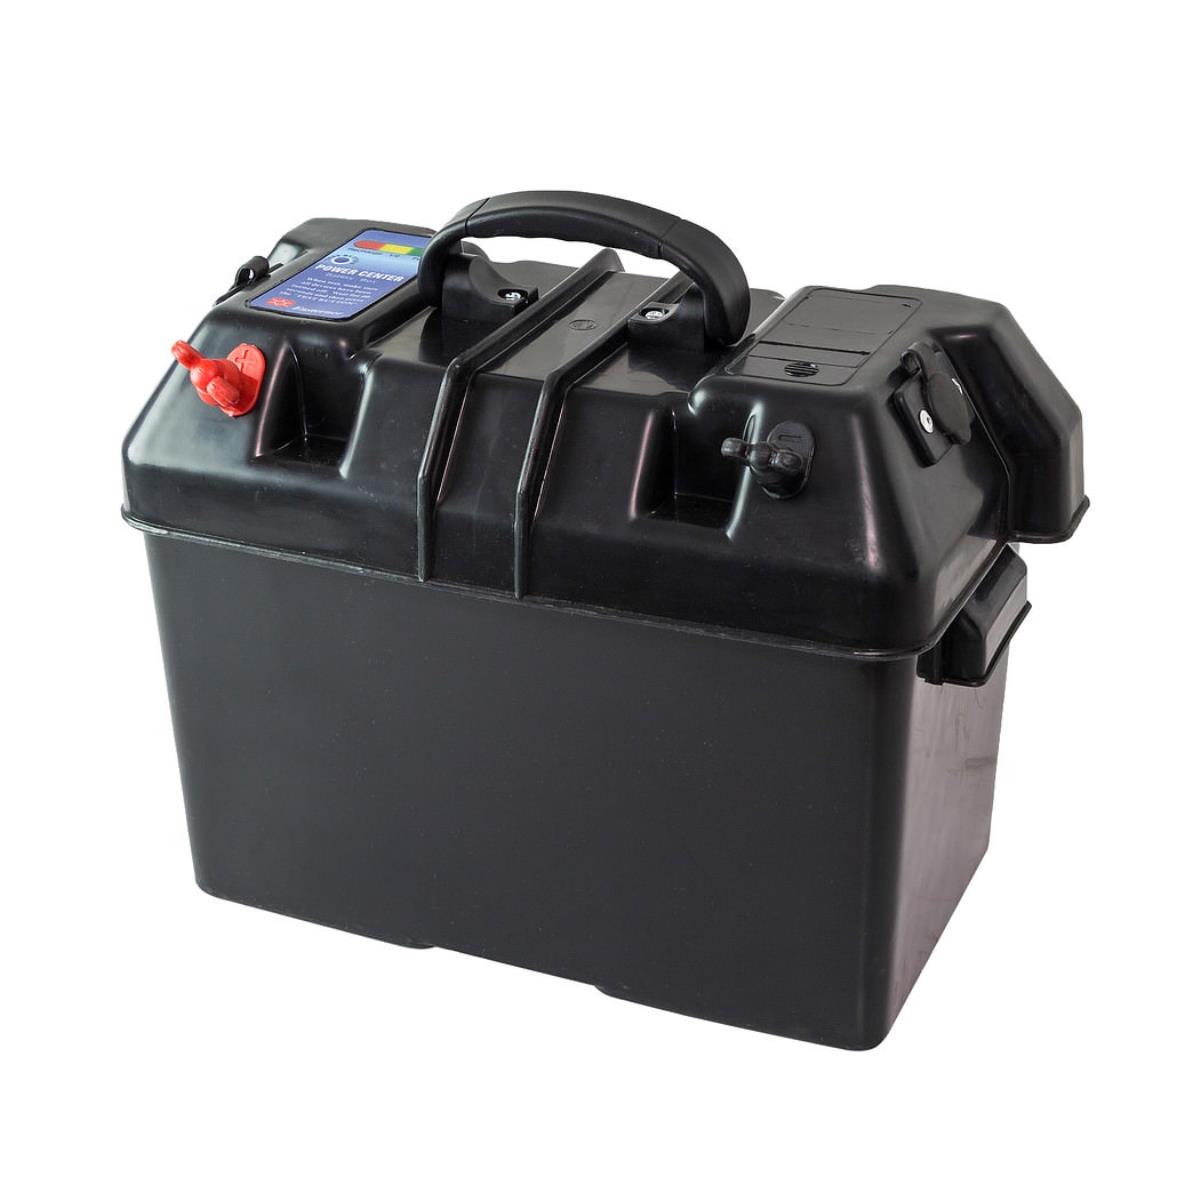 Ящик для АКБ 335х185х225 мм с клеммами и прикуривателями (C11537) растворный ящик topex